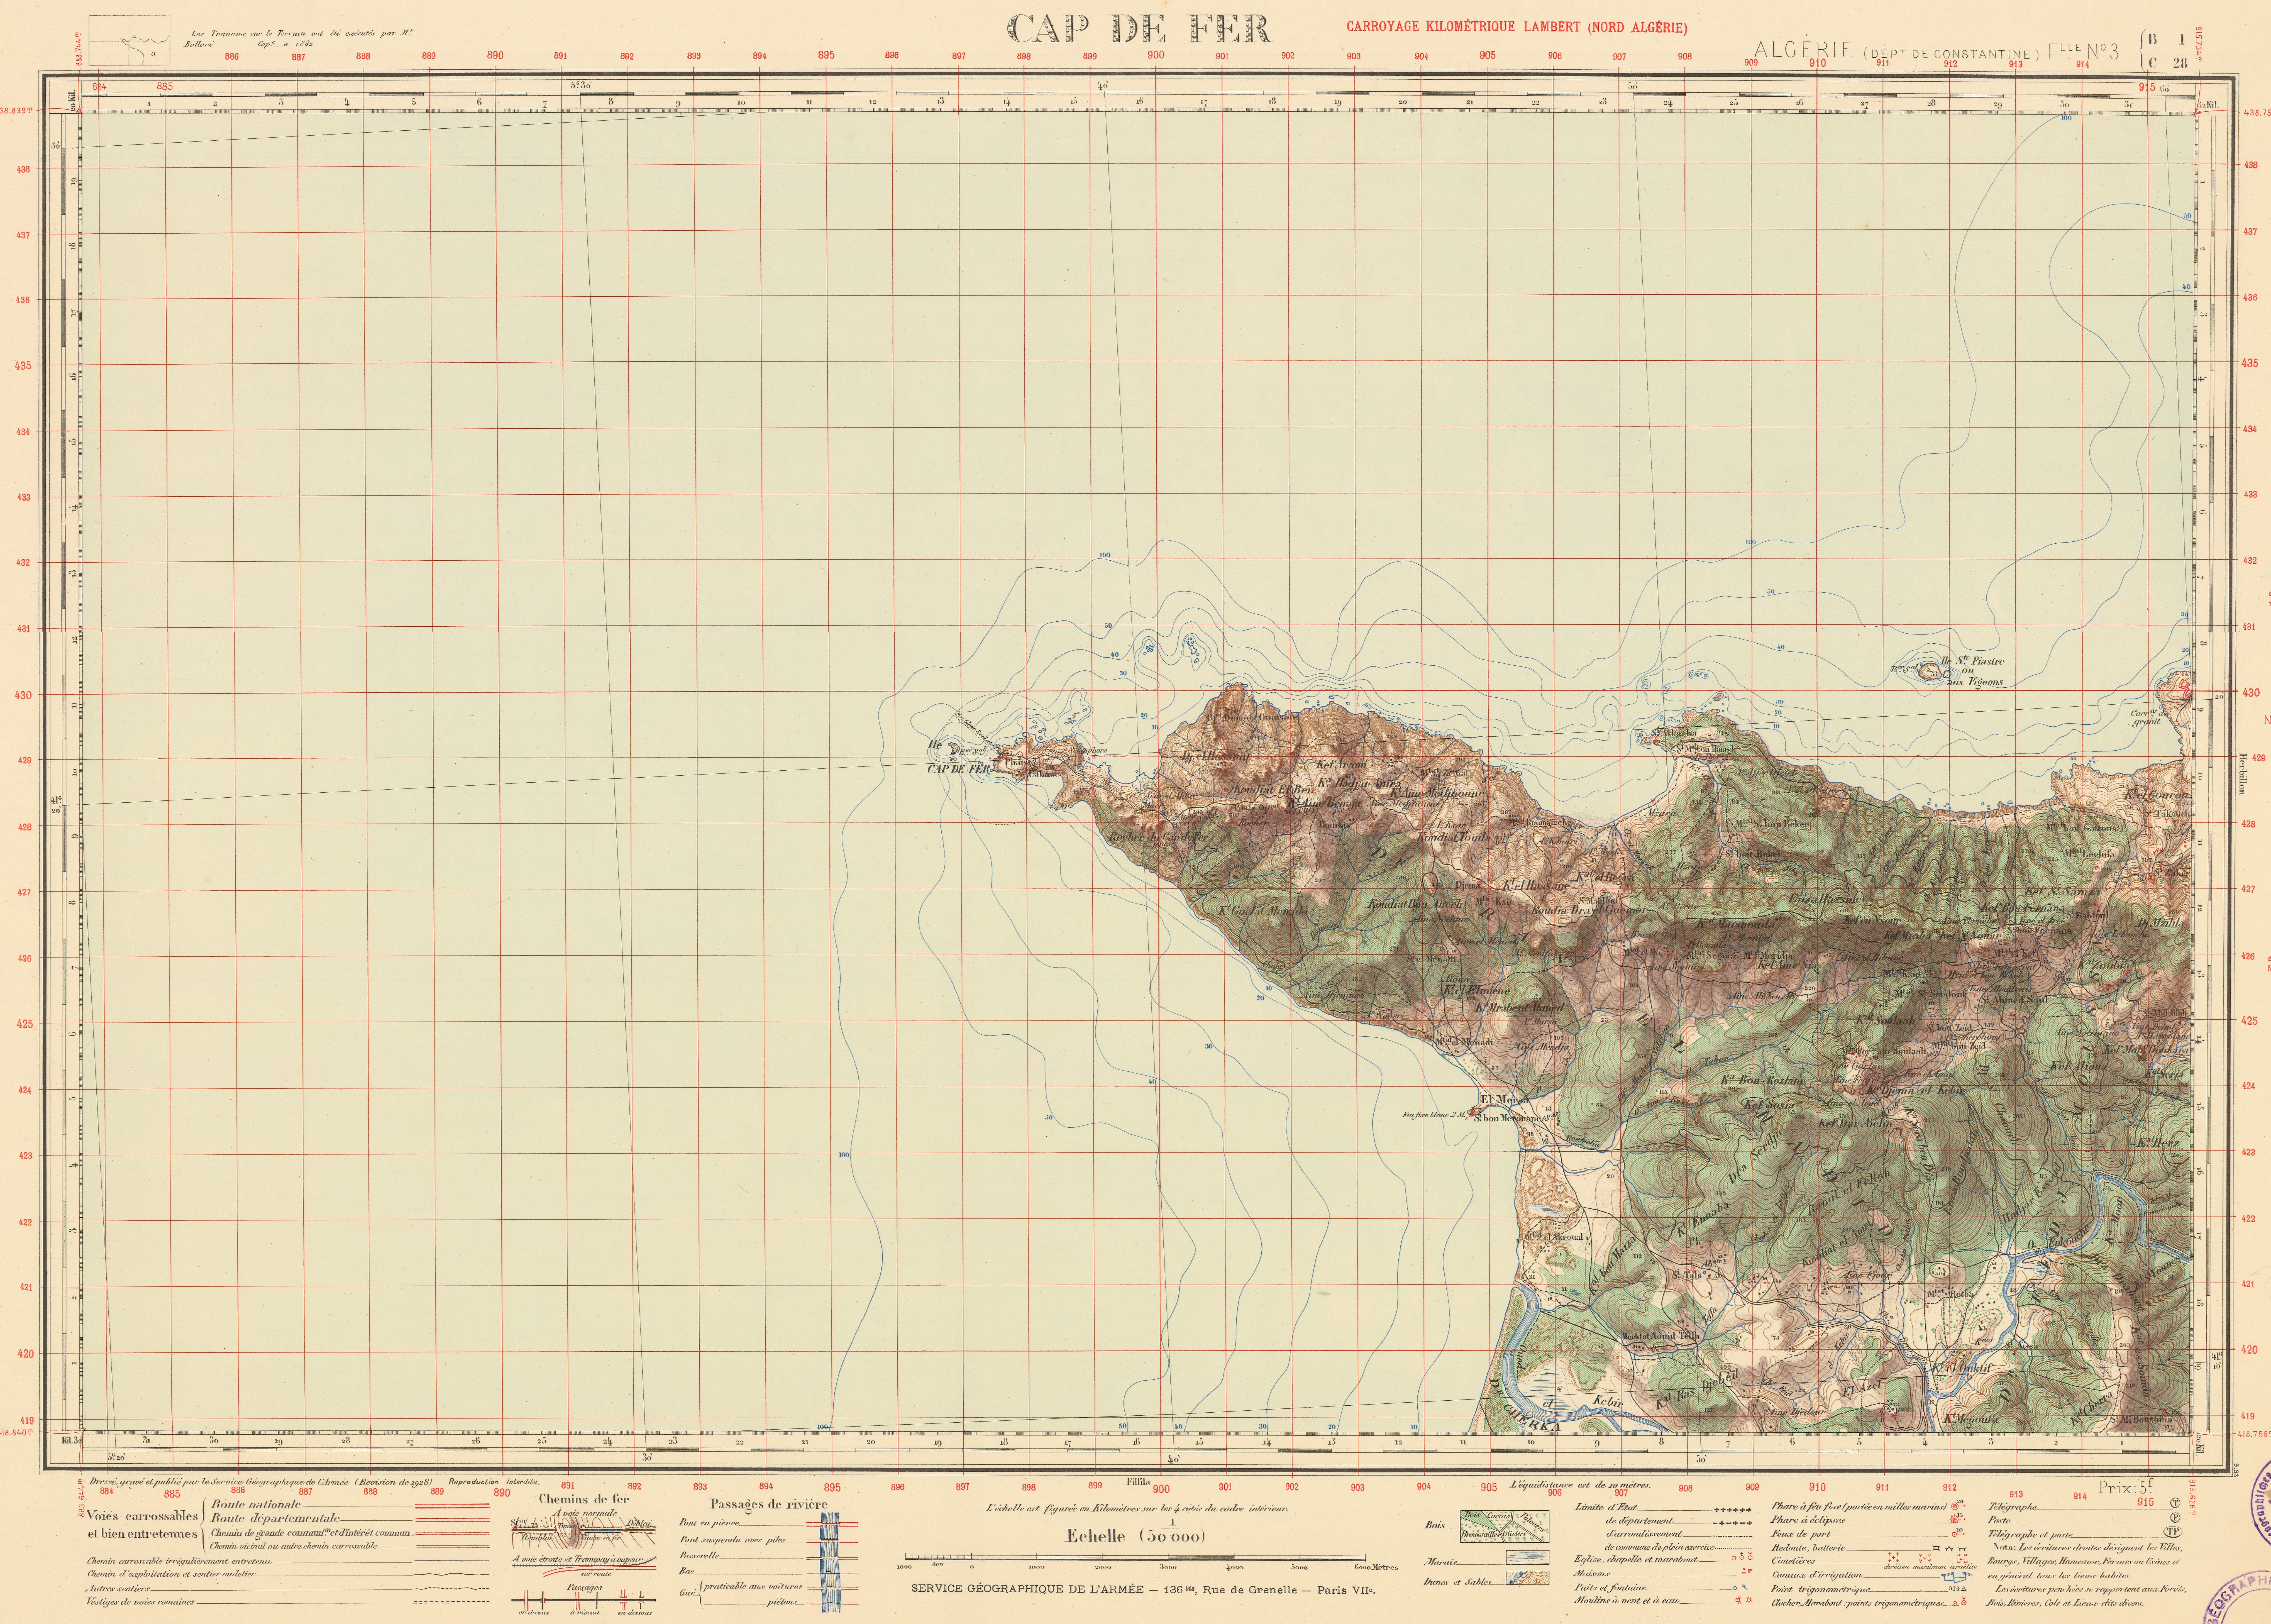 Map of Algérie, Cap de Fer, 1928. Source: http://igrek.amzp.pl/